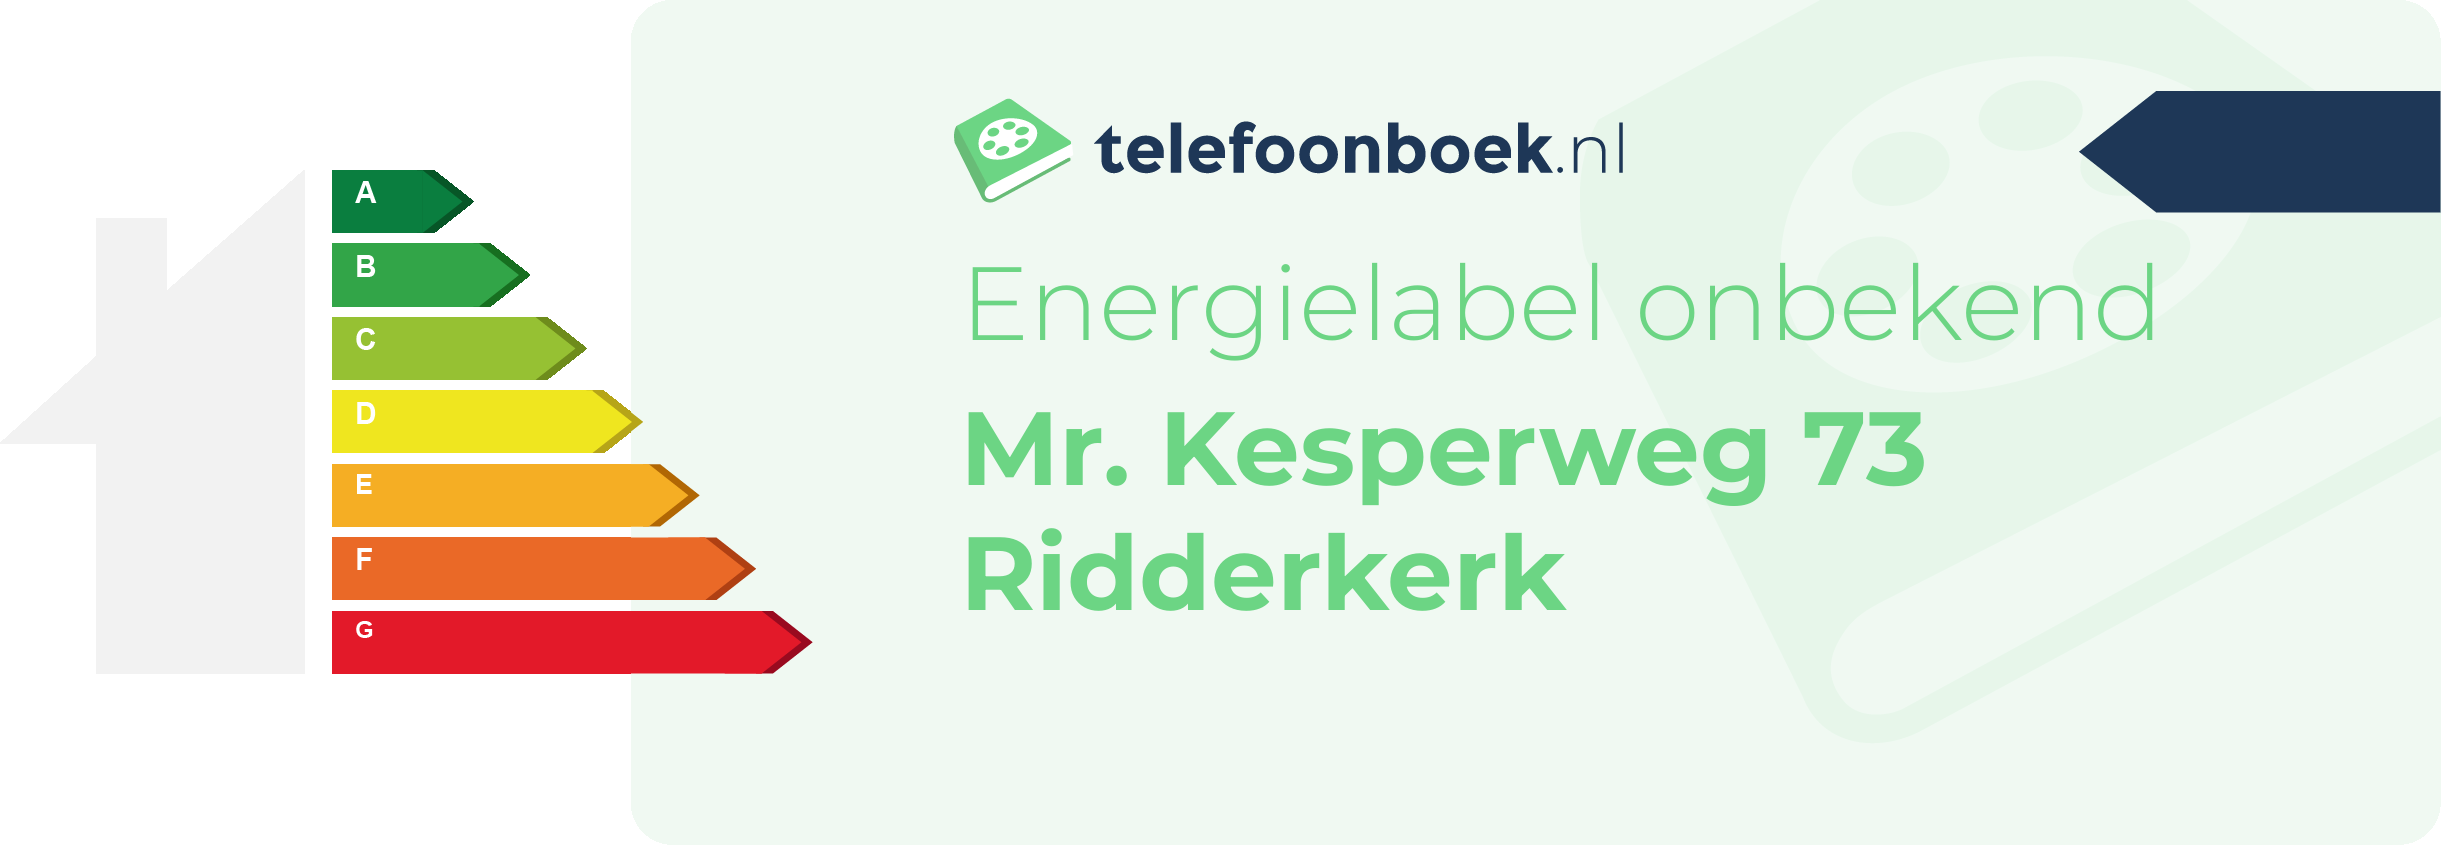 Energielabel Mr. Kesperweg 73 Ridderkerk